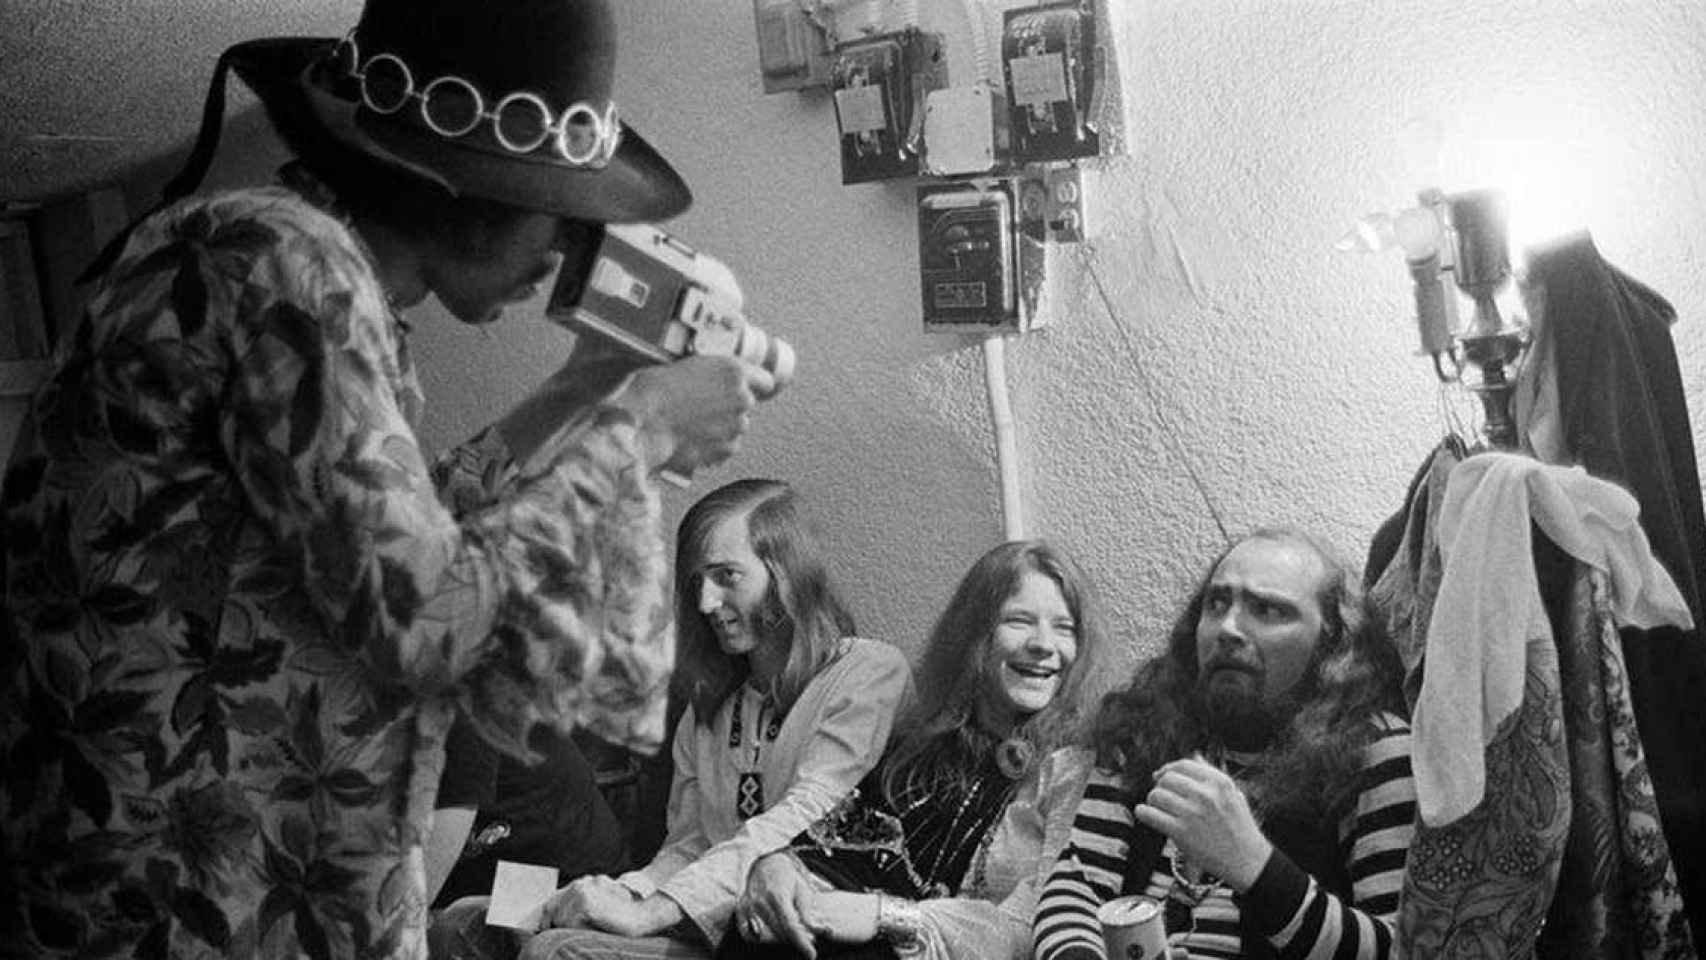 Jimi Hendrix filmando a Janis Joplin y a su grupo antes de un concierto